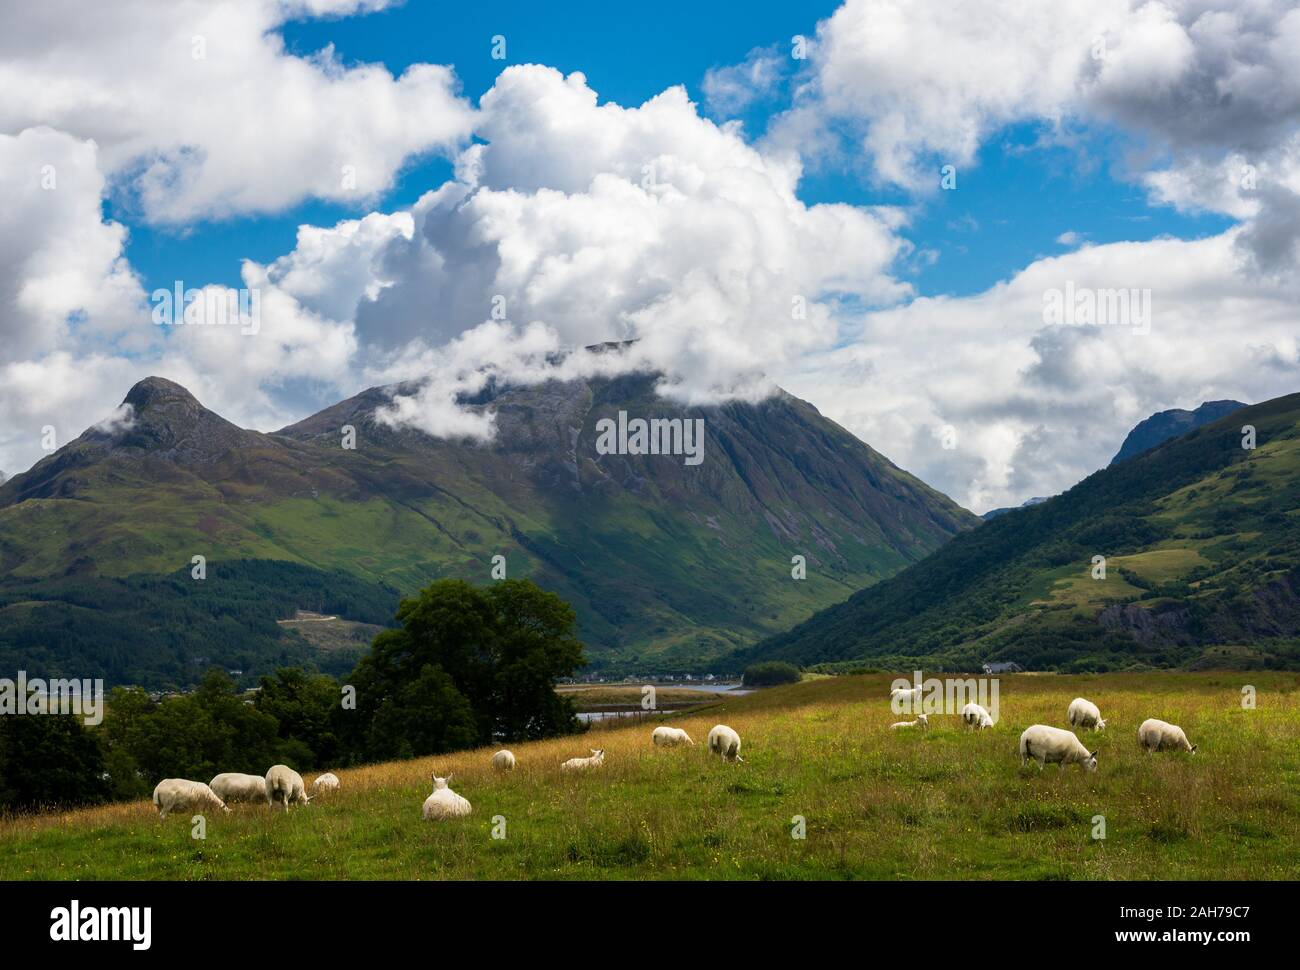 Eine große Herde Schafe in einem friedlichen schottischen Berg Weide unter einem blauen Himmel mit geschwollenen Wolken Stockfoto